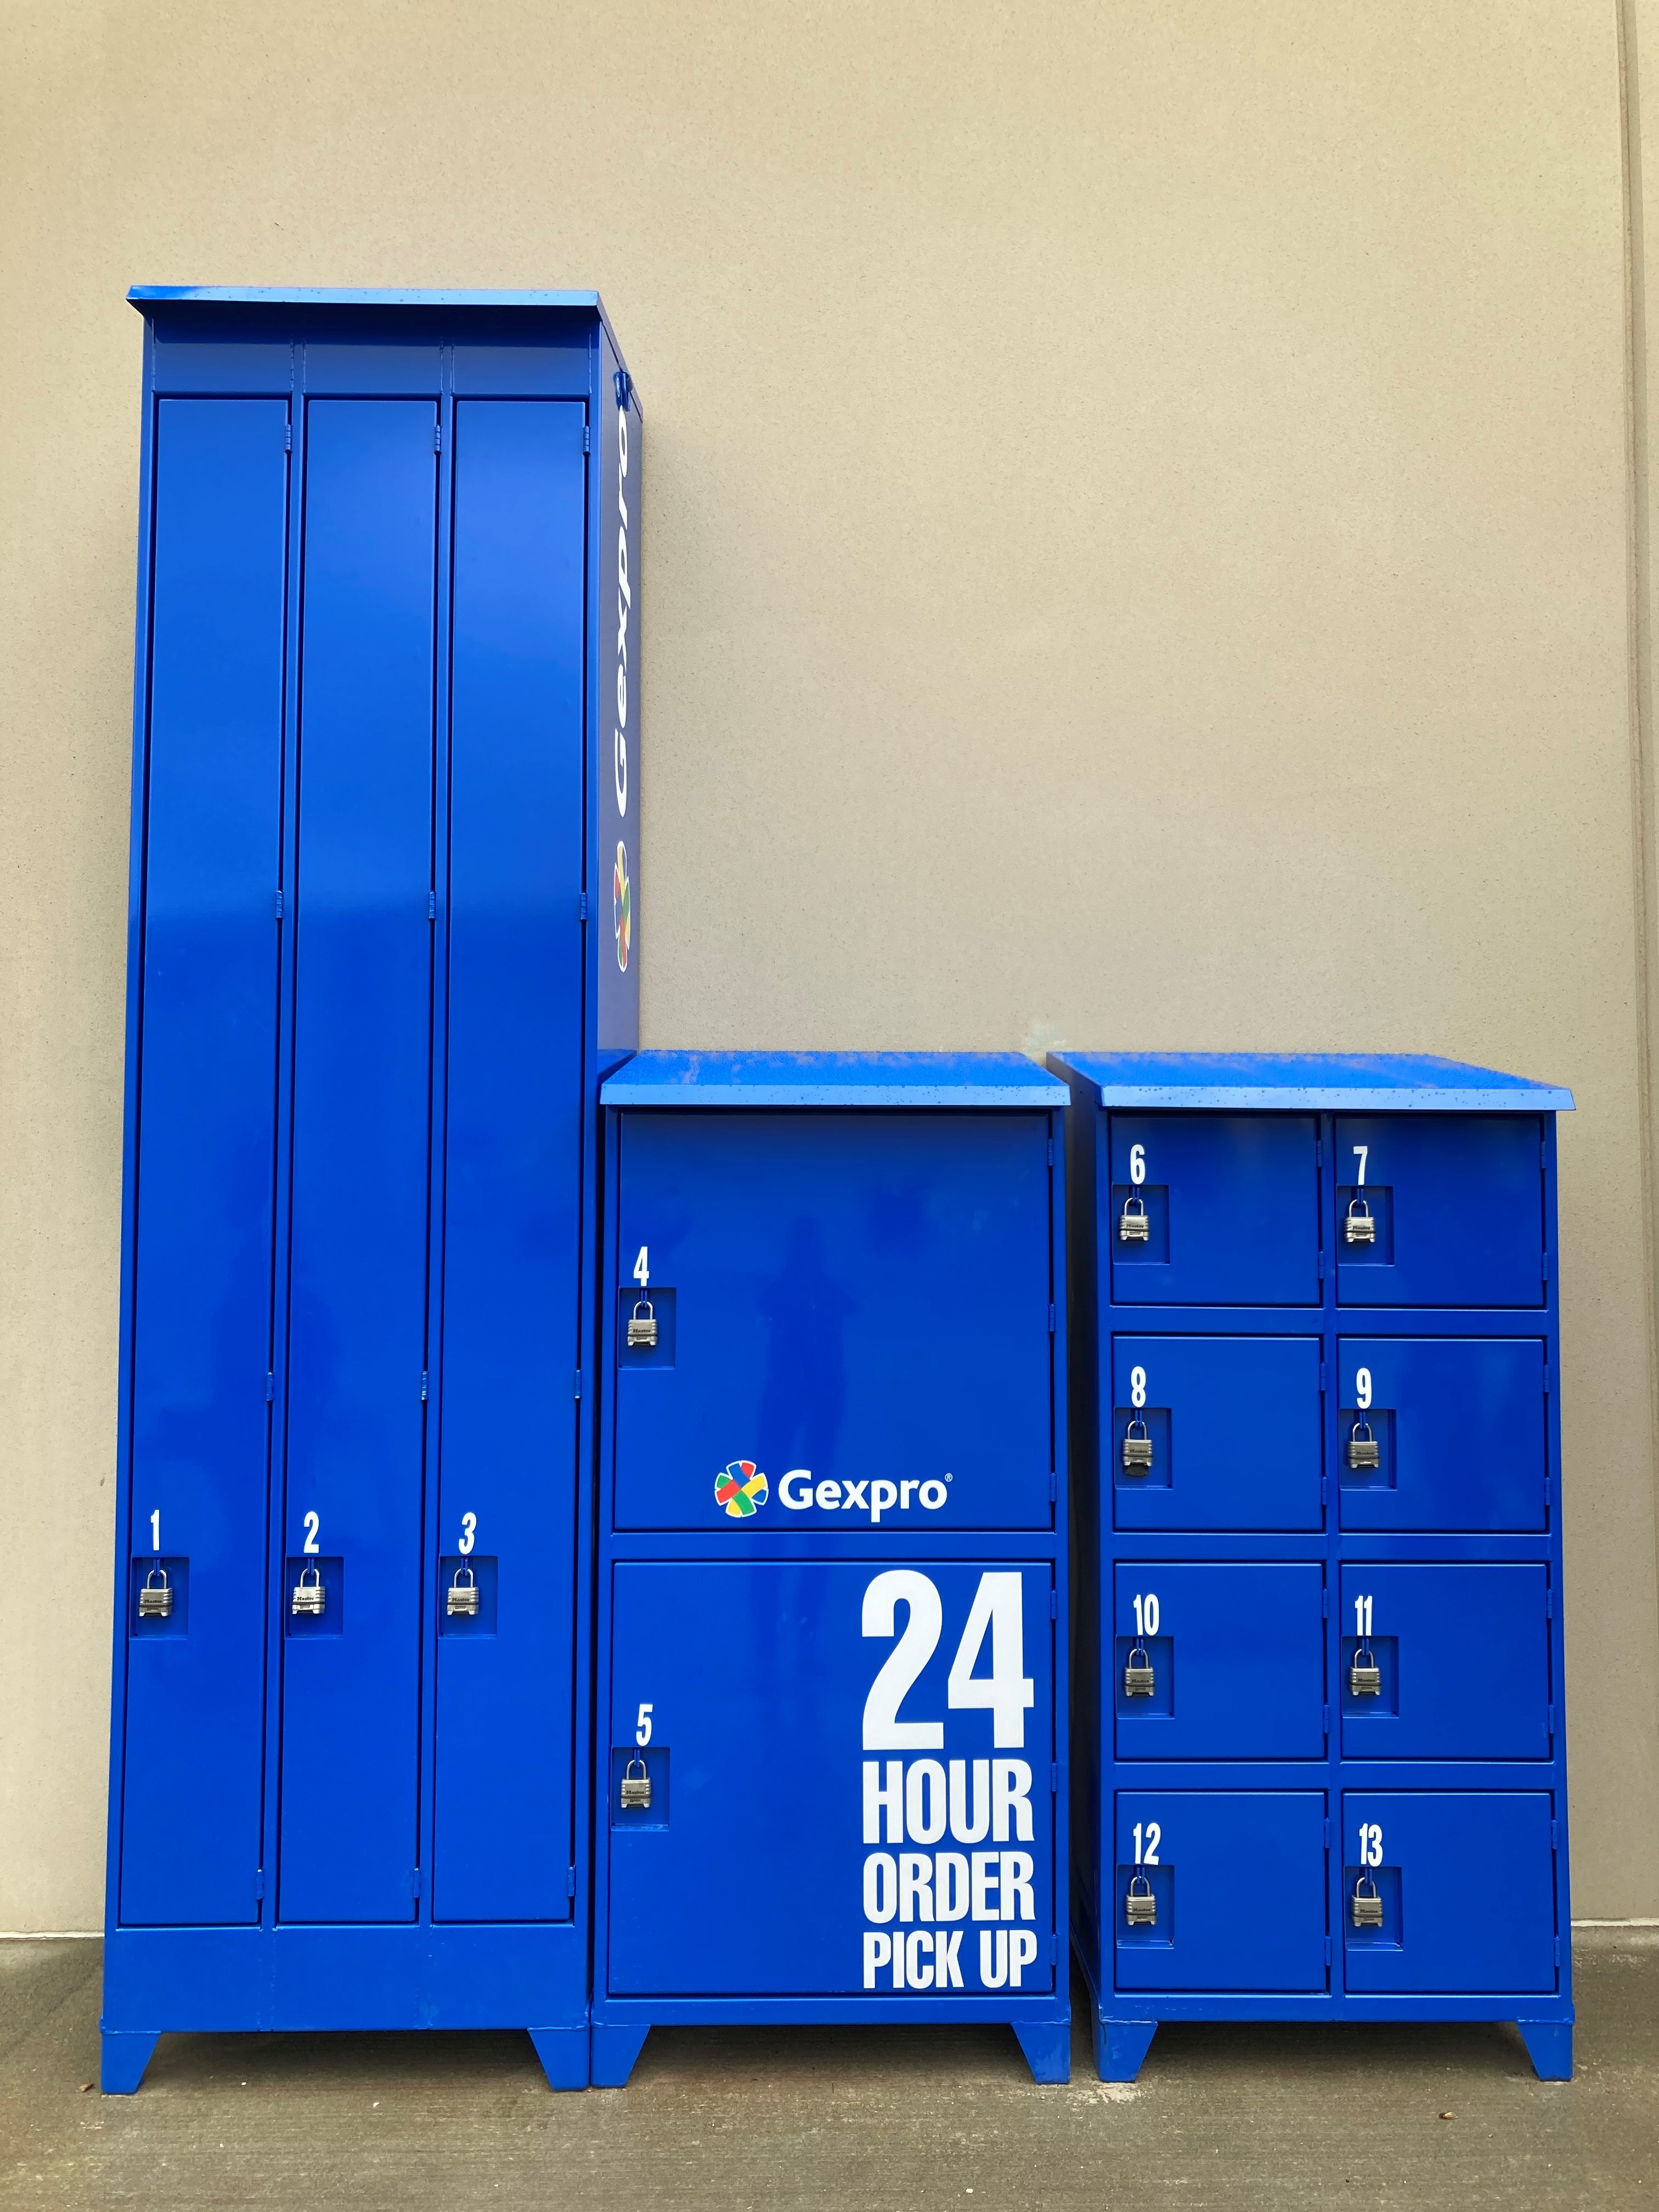 24 hour customer pickup lockers